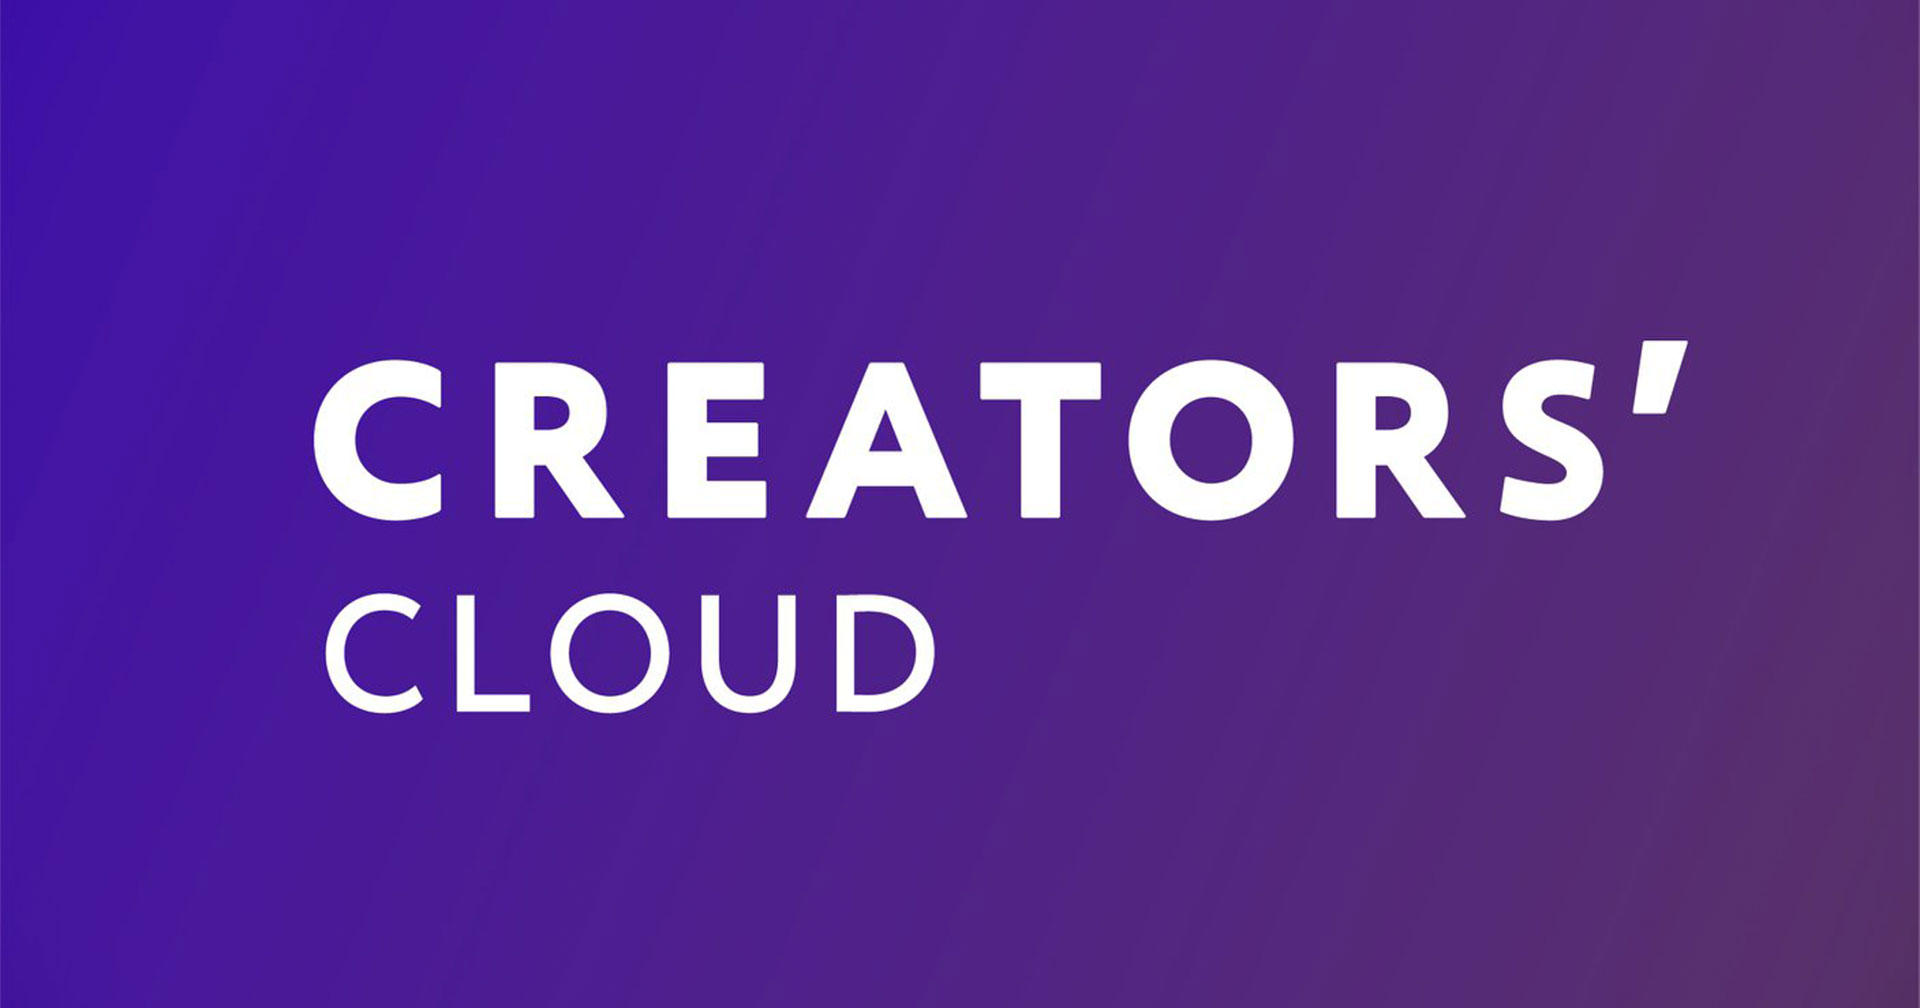 โซนี่เปิด Creators’ Cloud แอปพลิเคชันผสานพลังระหว่างกล้อง และ Cloud สนับสนุนผลงานสุดสร้างสรรค์ของคอนเทนต์ครีเอเตอร์ทั่วโลก